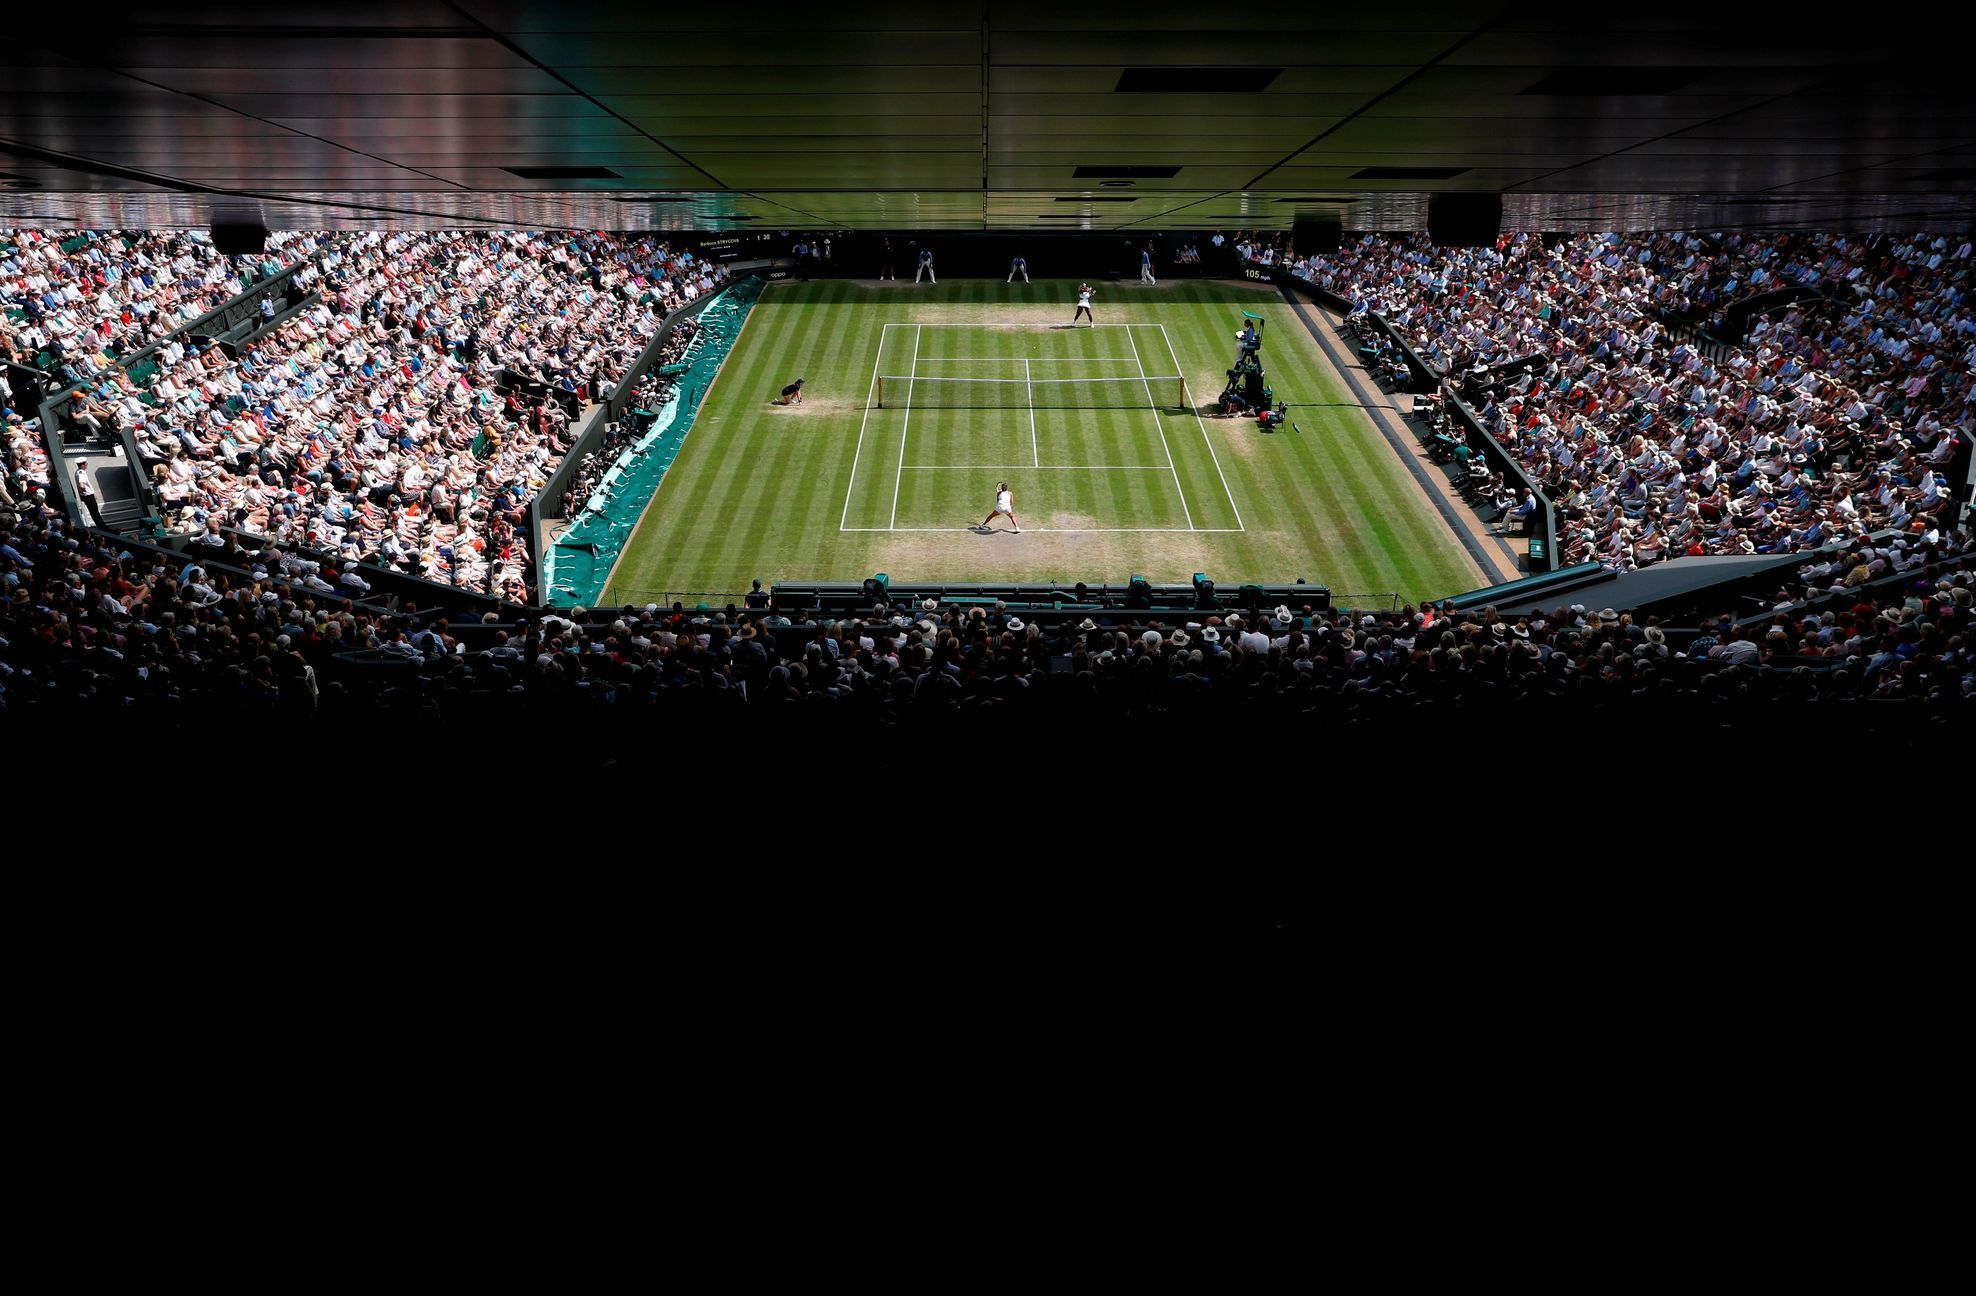 Strýcová a Williamsová v semifinále Wimbledonu 2019